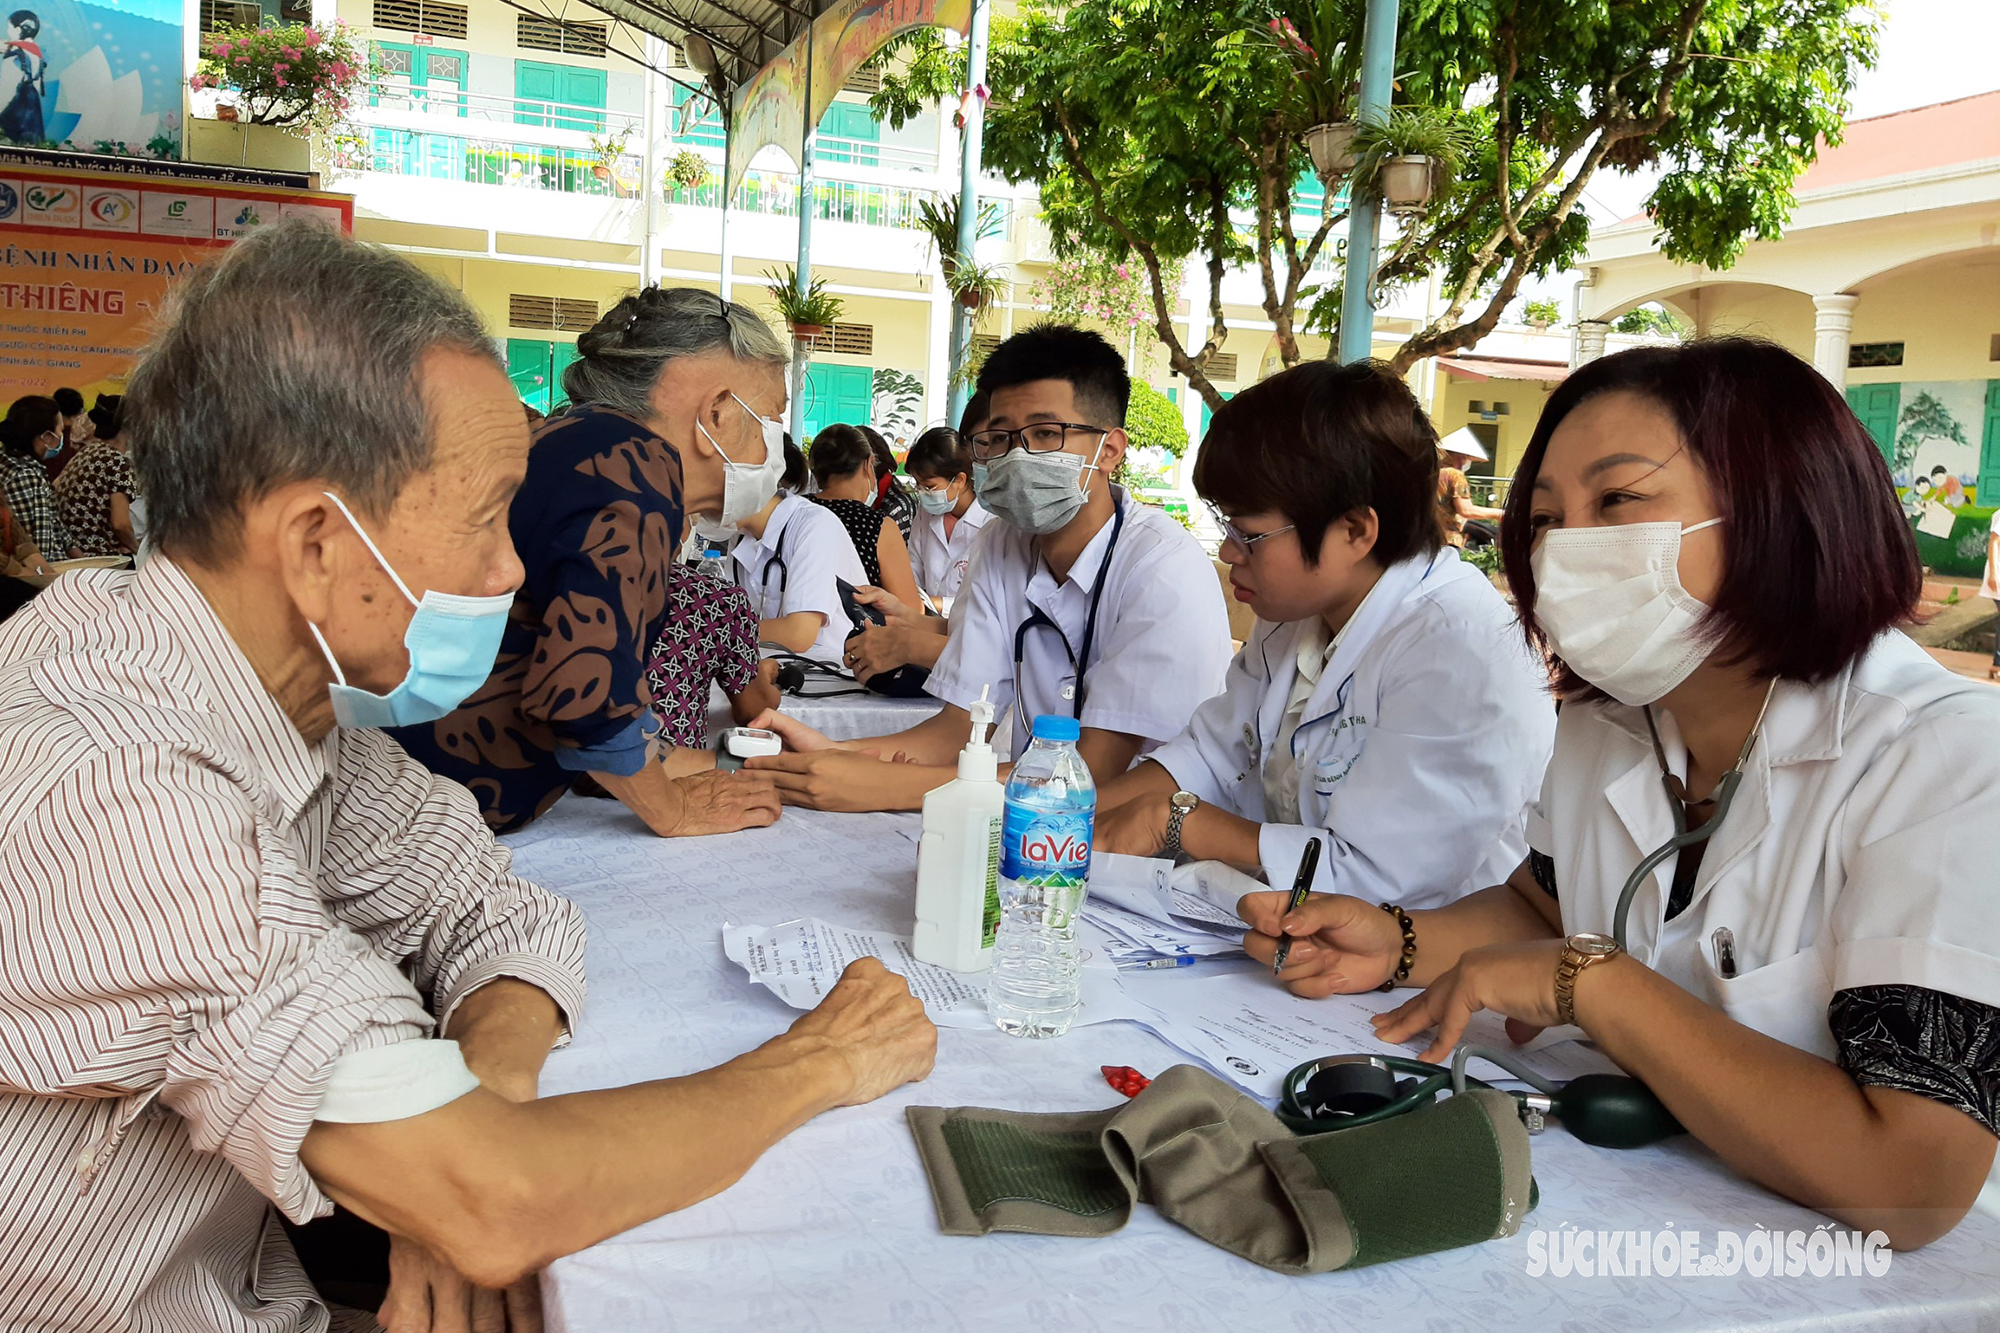 Bác sĩ Hà Nội & Hội Thày Thuốc Trẻ Tỉnh Bắc Giang khám bệnh & phát thuốc miễn phí cho 500 người có công với cách mạng - Ảnh 6.